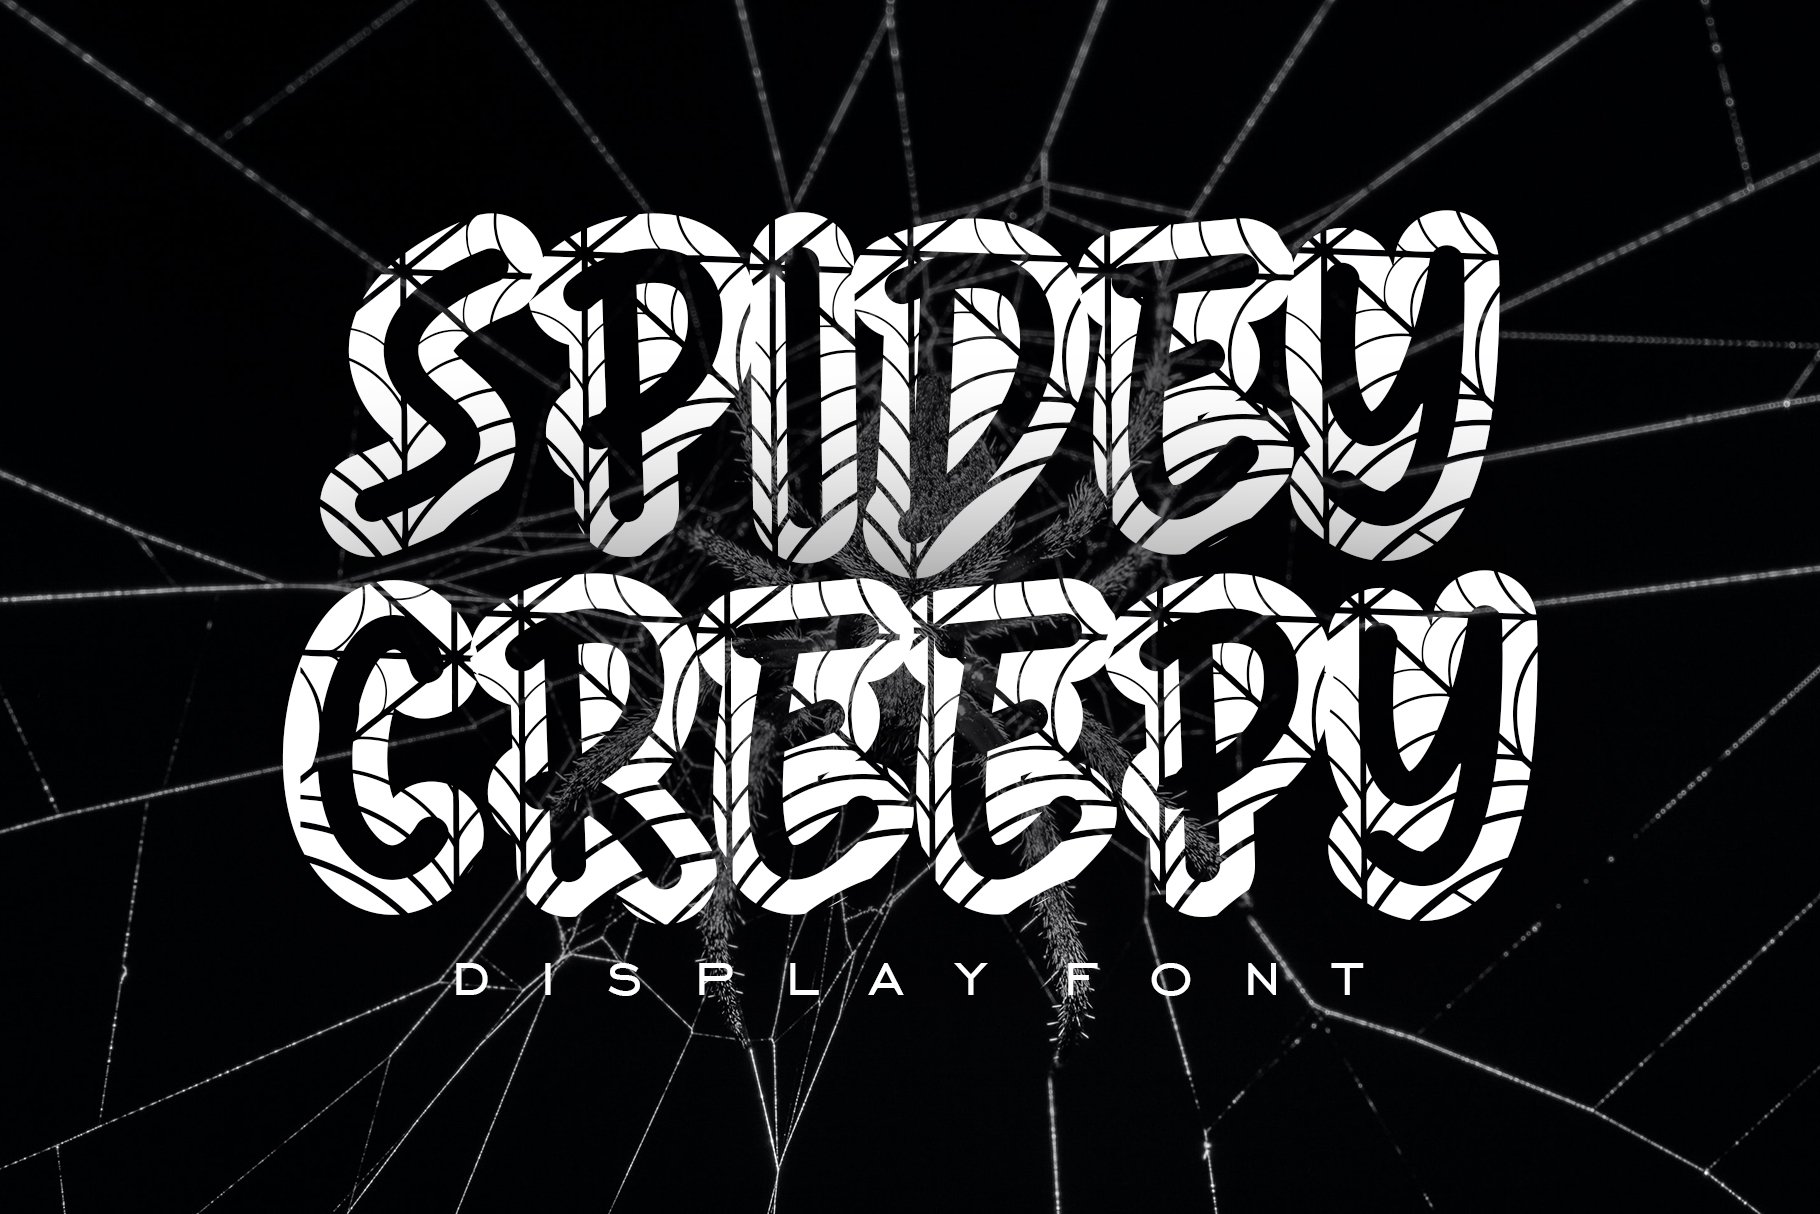 Spidey Creepy cover image.